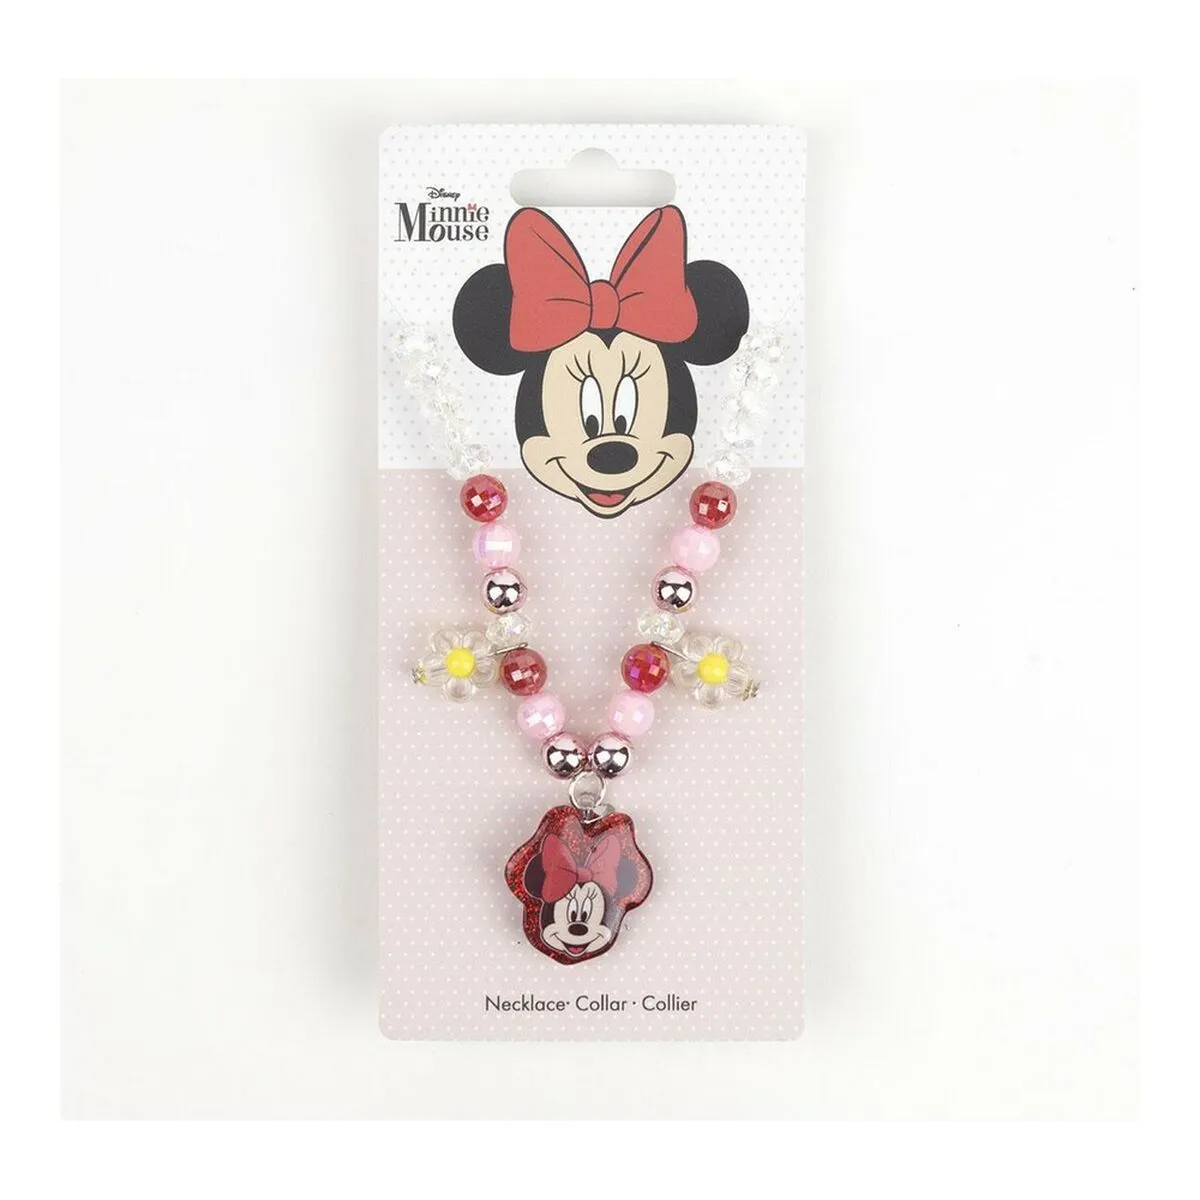 Collana Bambina Minnie Mouse Multicolore